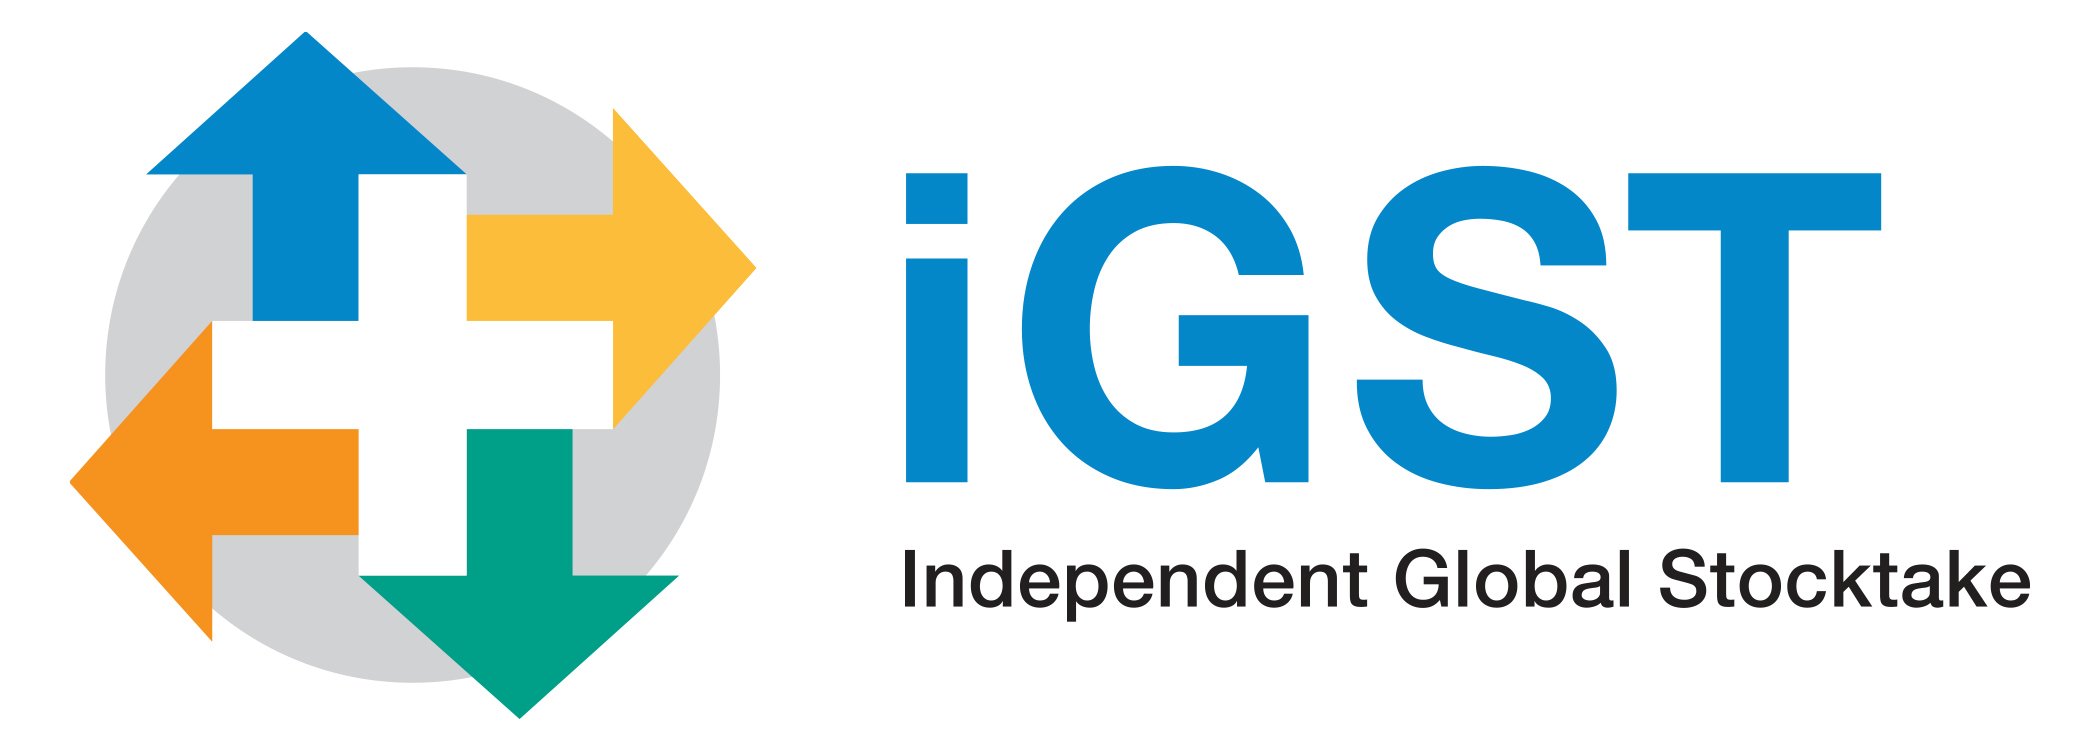 iGST_logo_rgb